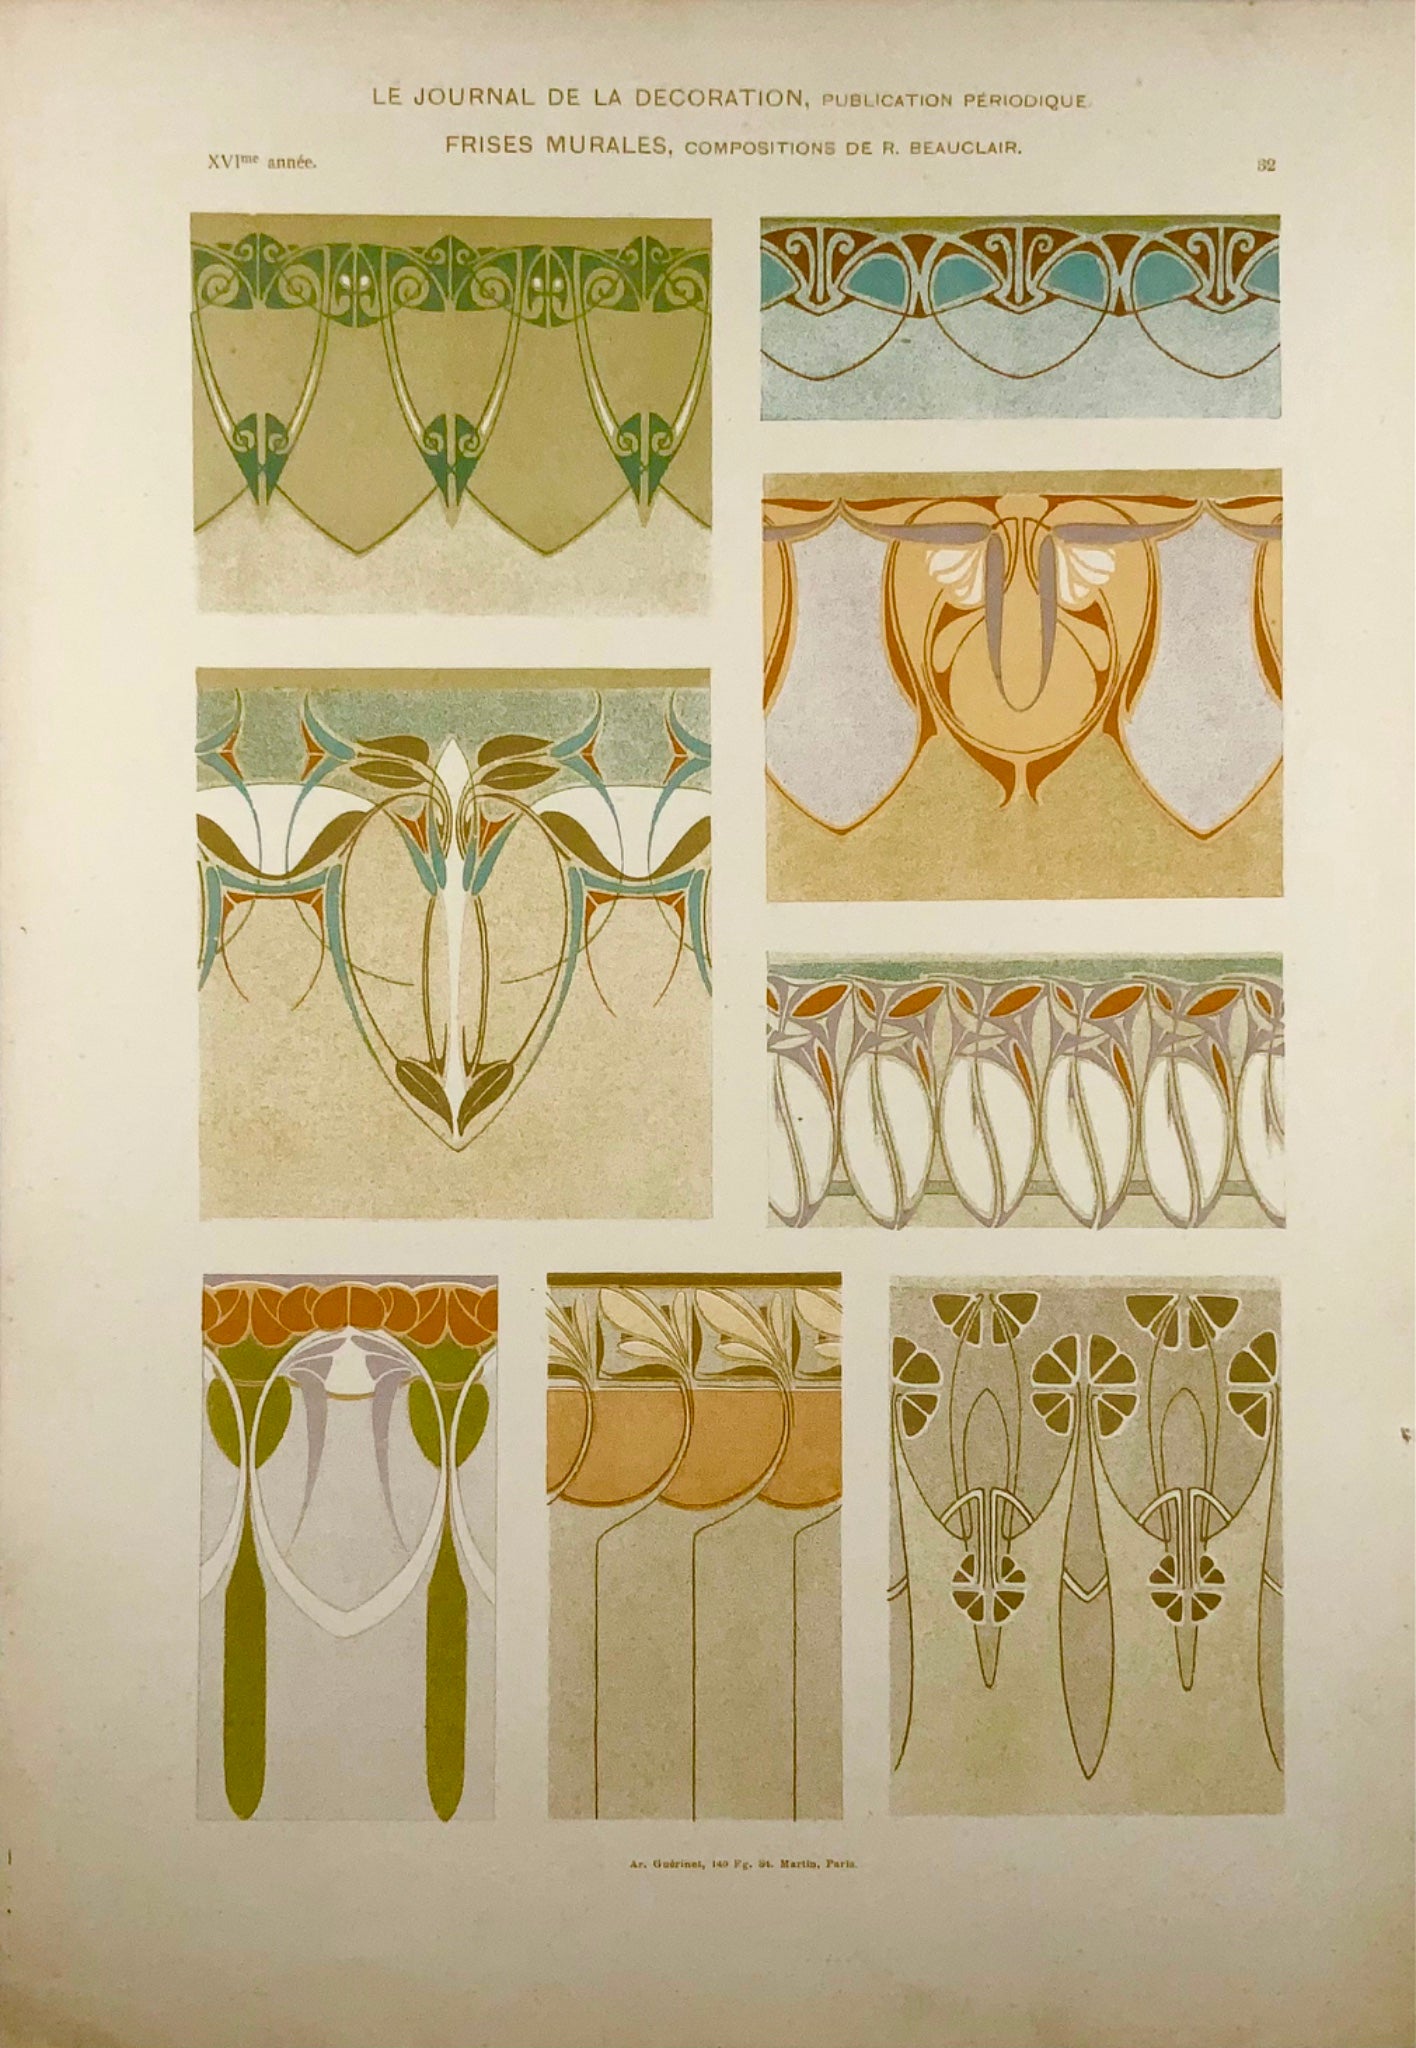 1895 Peintures murales, Frise, décoration, art nouveau, in-folio, paysage floral, art